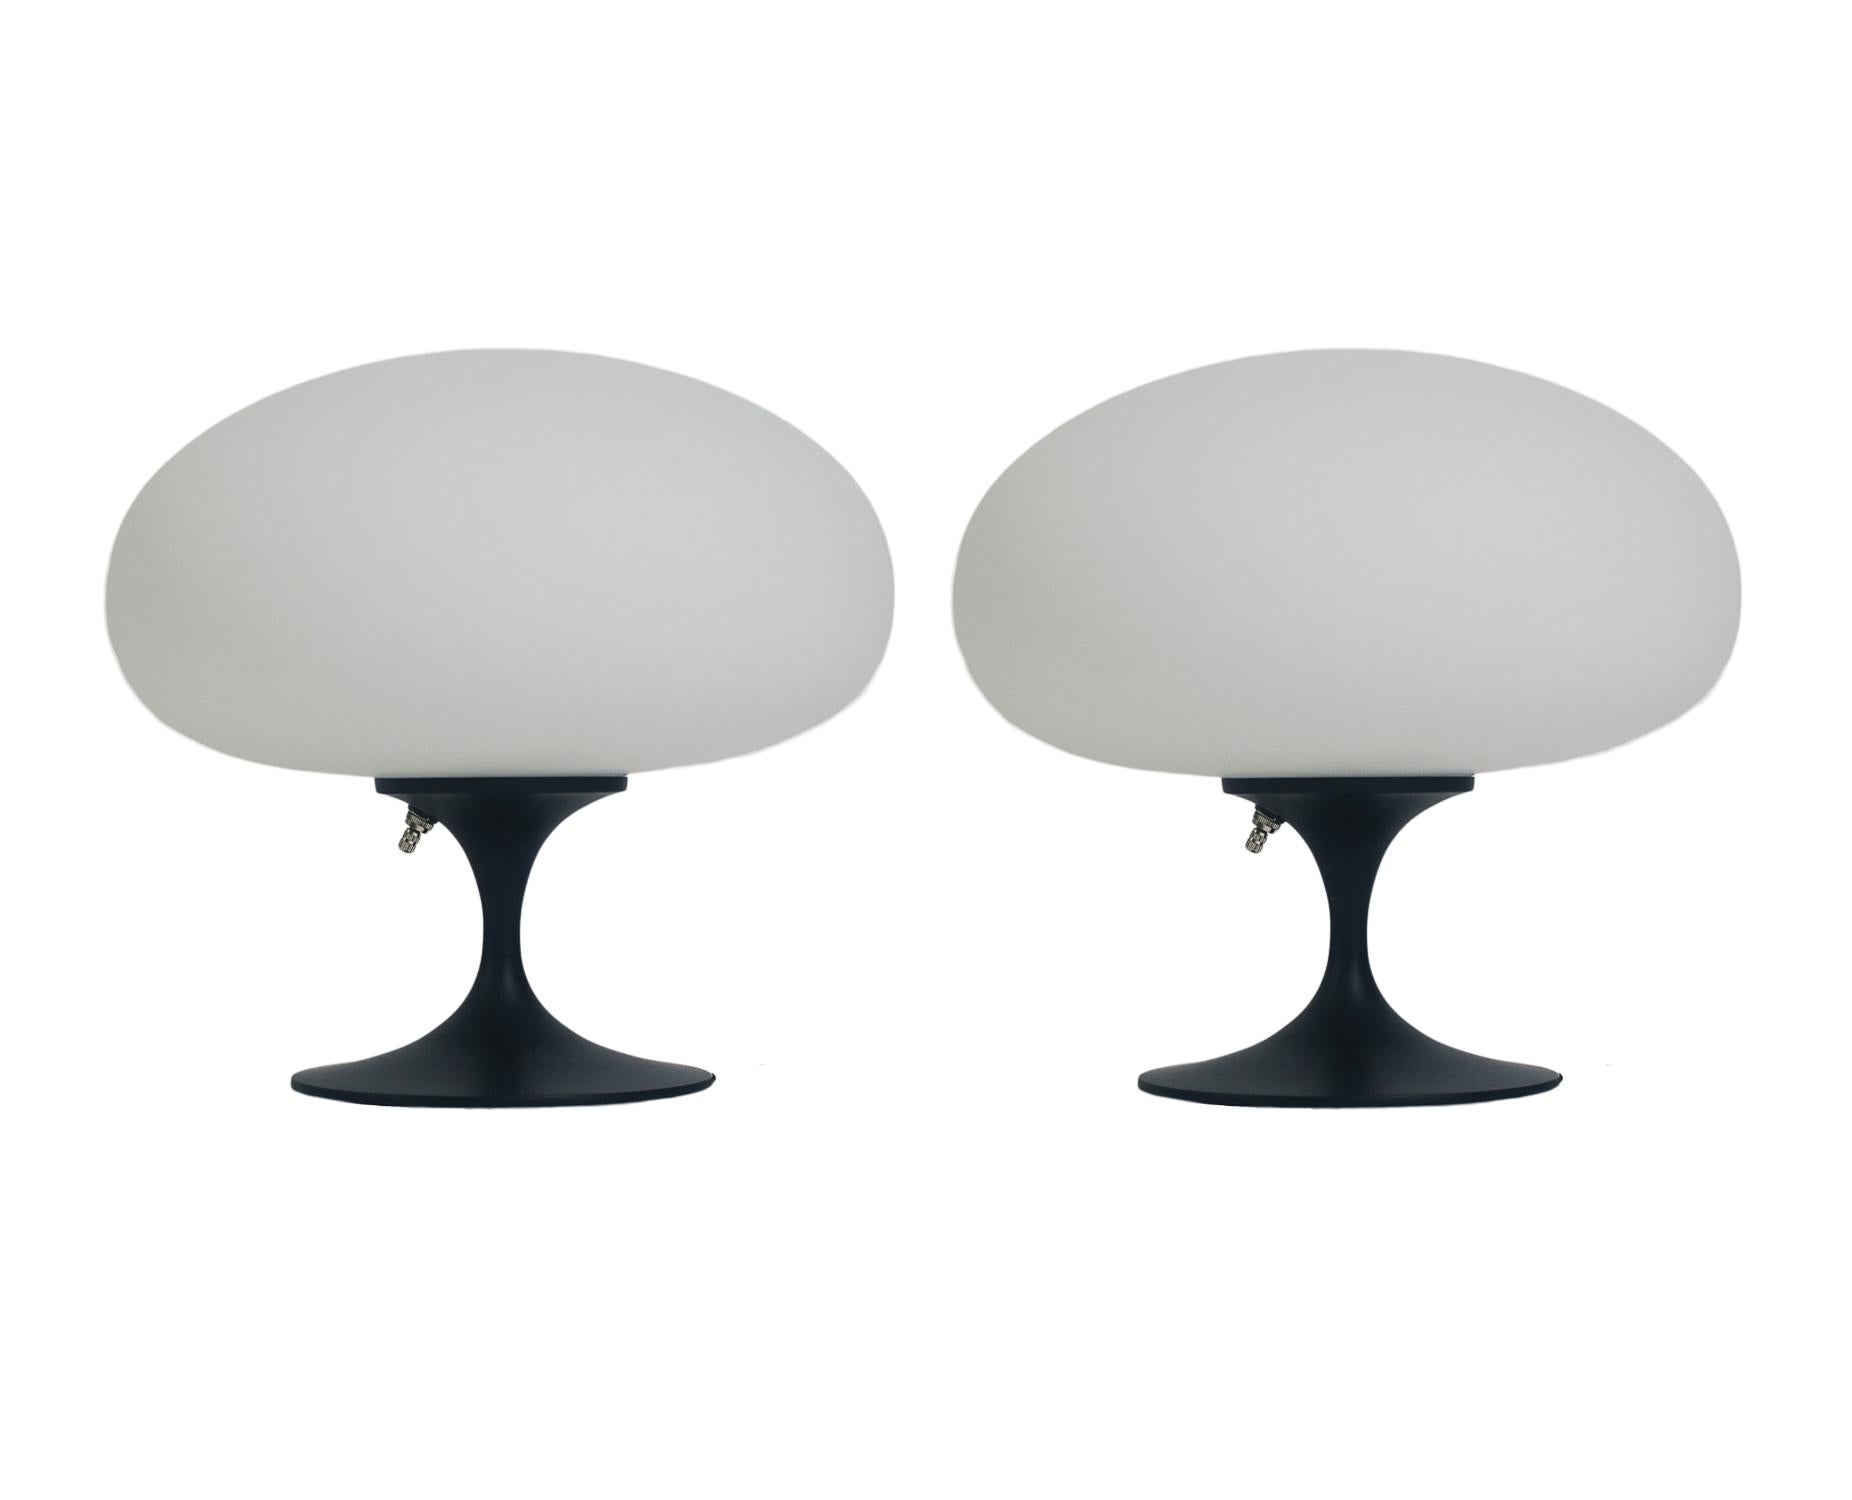 Ein wunderschönes Paar passender Tischlampen in Tulpenform der Firma Laurel Lamp. Sie verfügen über schwarz pulverbeschichtete Aluminiumguss-Sockel mit mundgeblasenen, mattierten weißen Glasschirmen. Der Preis beinhaltet das Paar wie abgebildet.